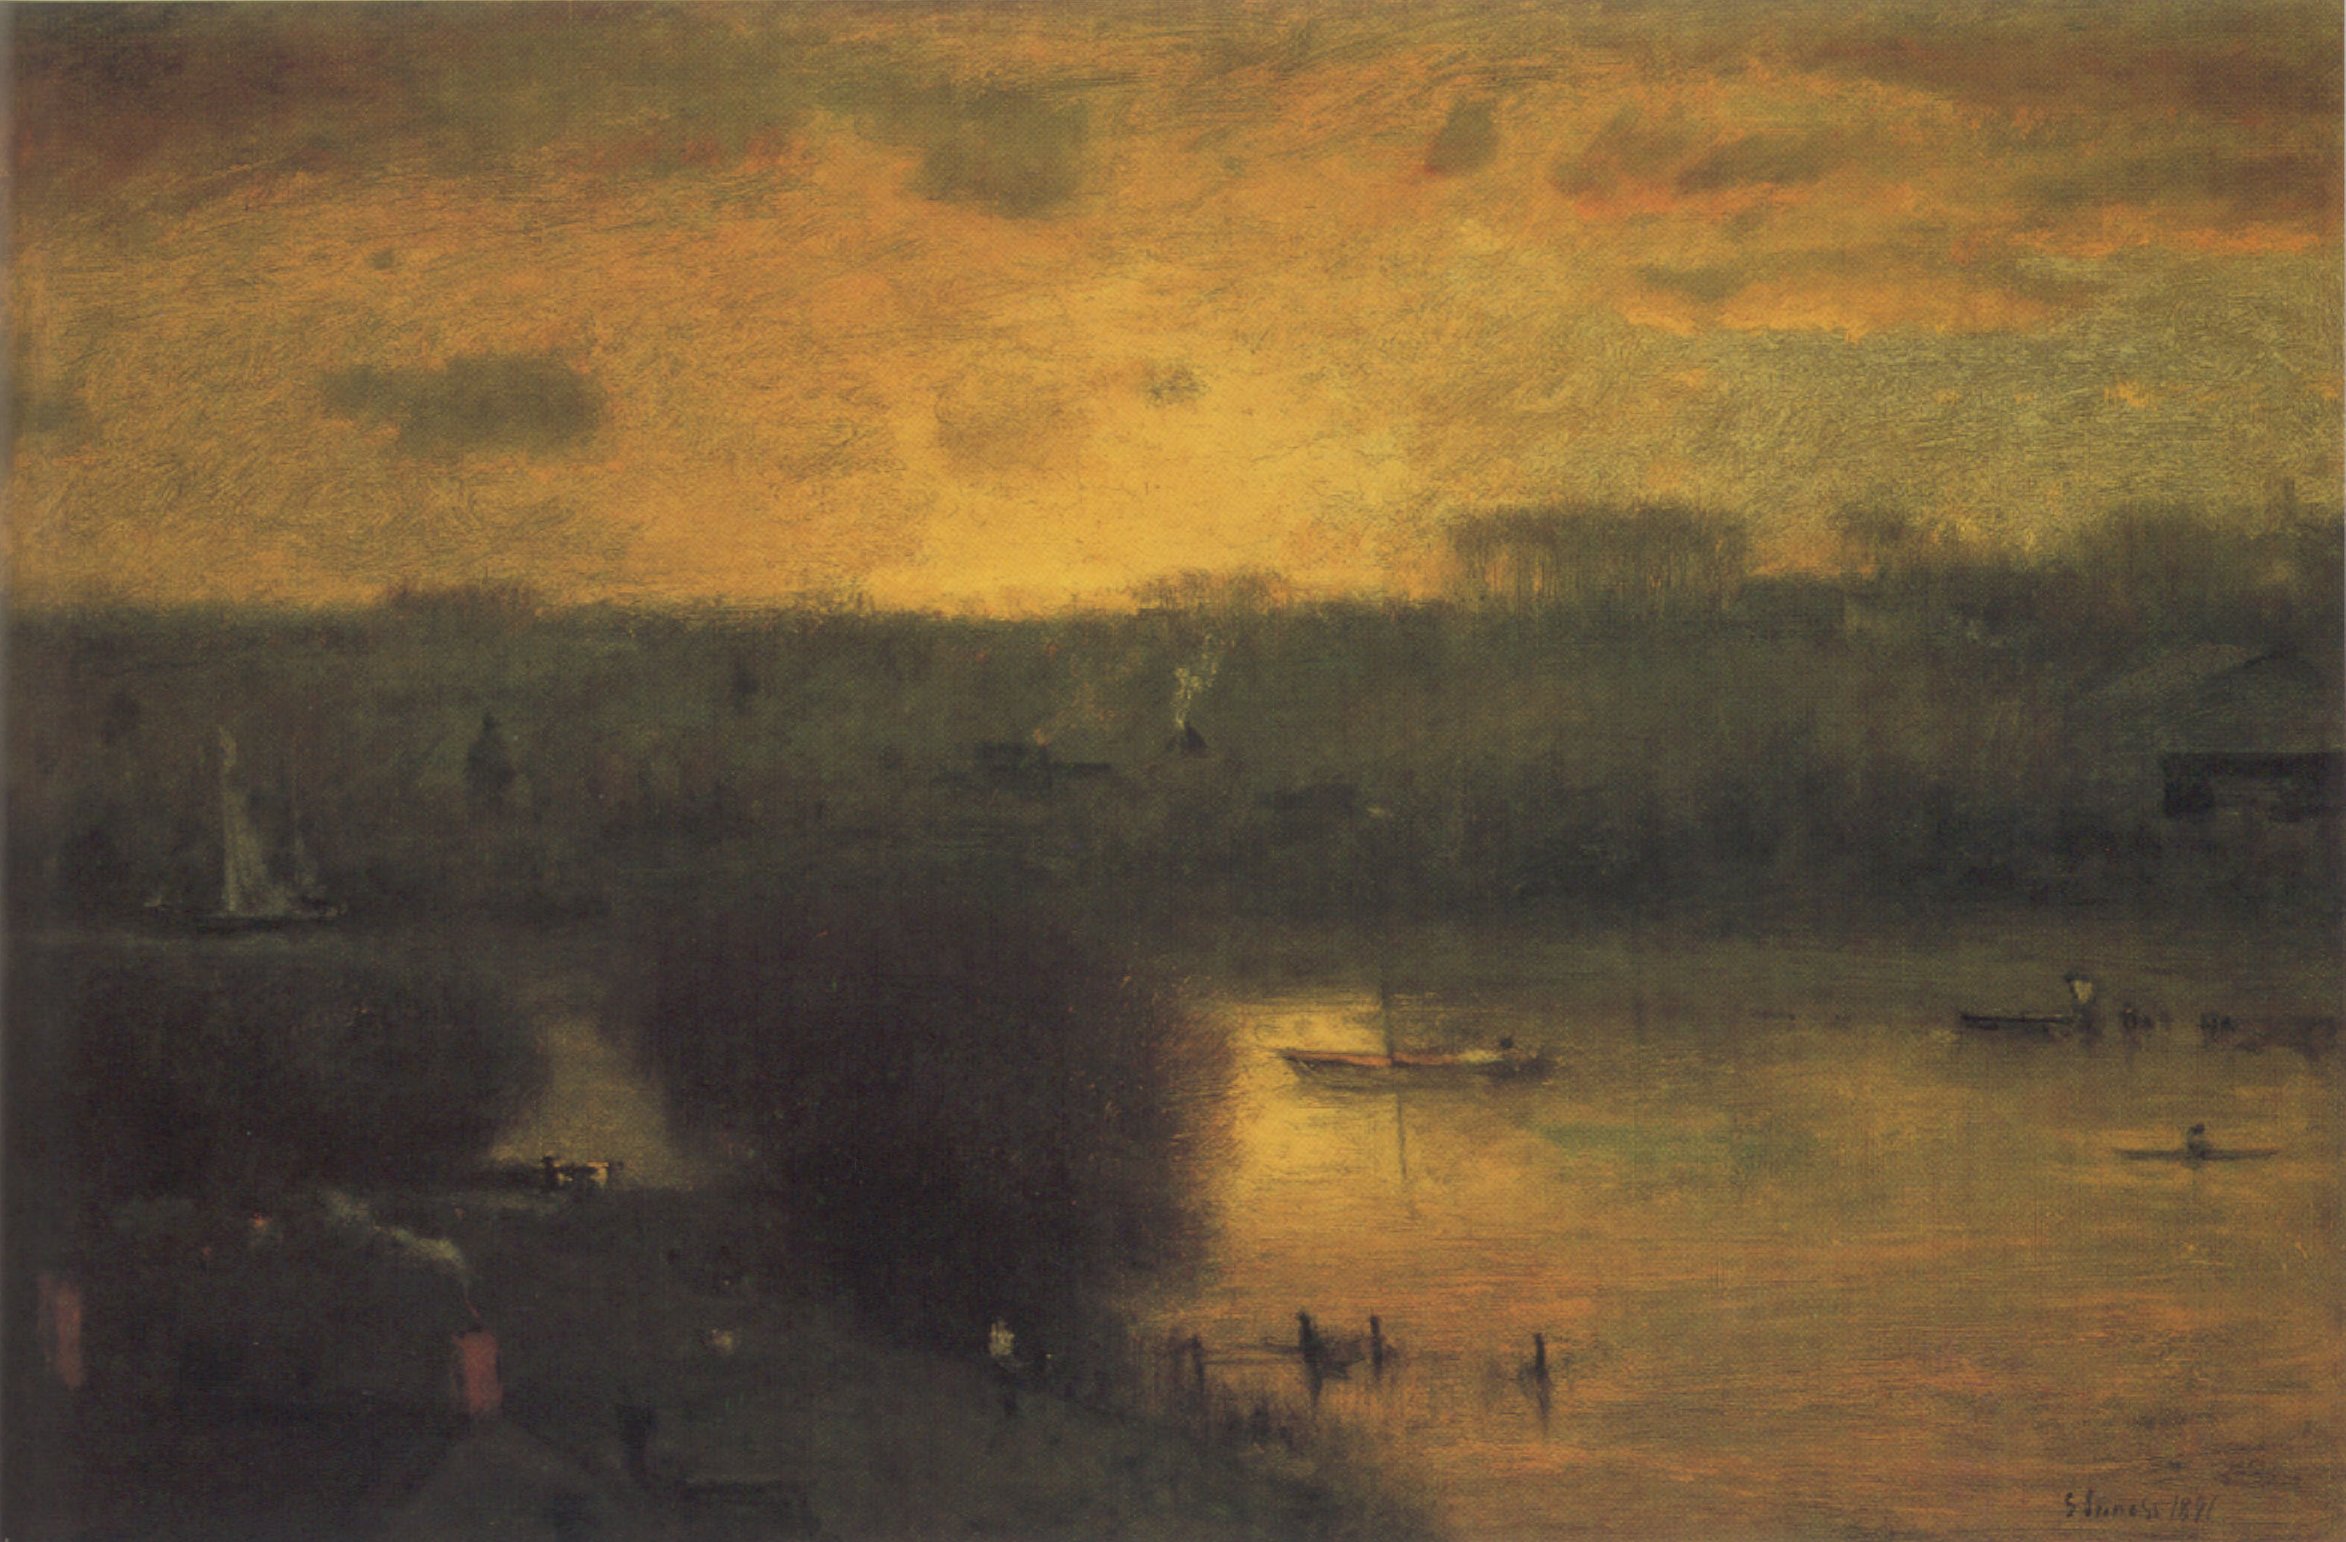 Inness - Sunset on the Passaic, oil on canvas, 1891